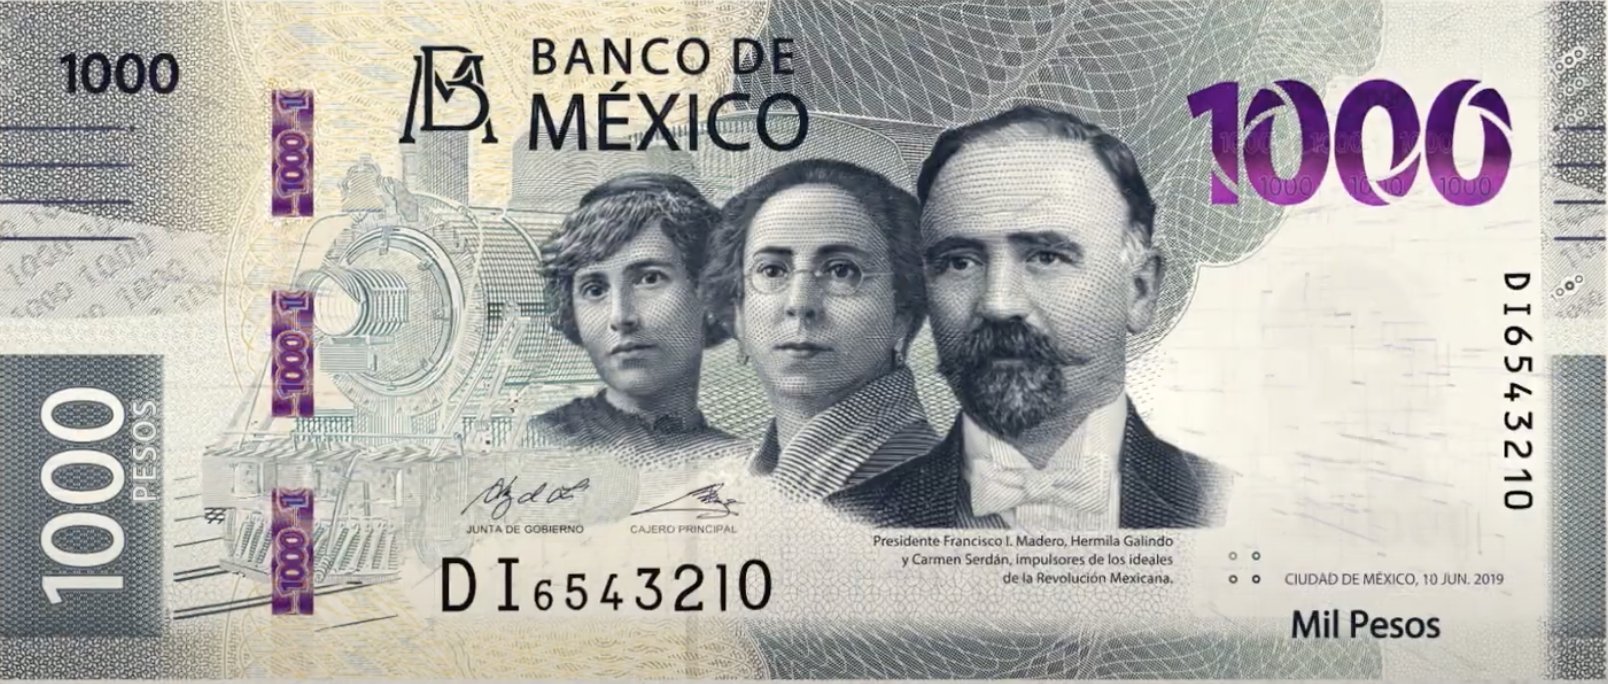 Nuevo billete de mil pesos conoce sus detalles Yucatan Ahora